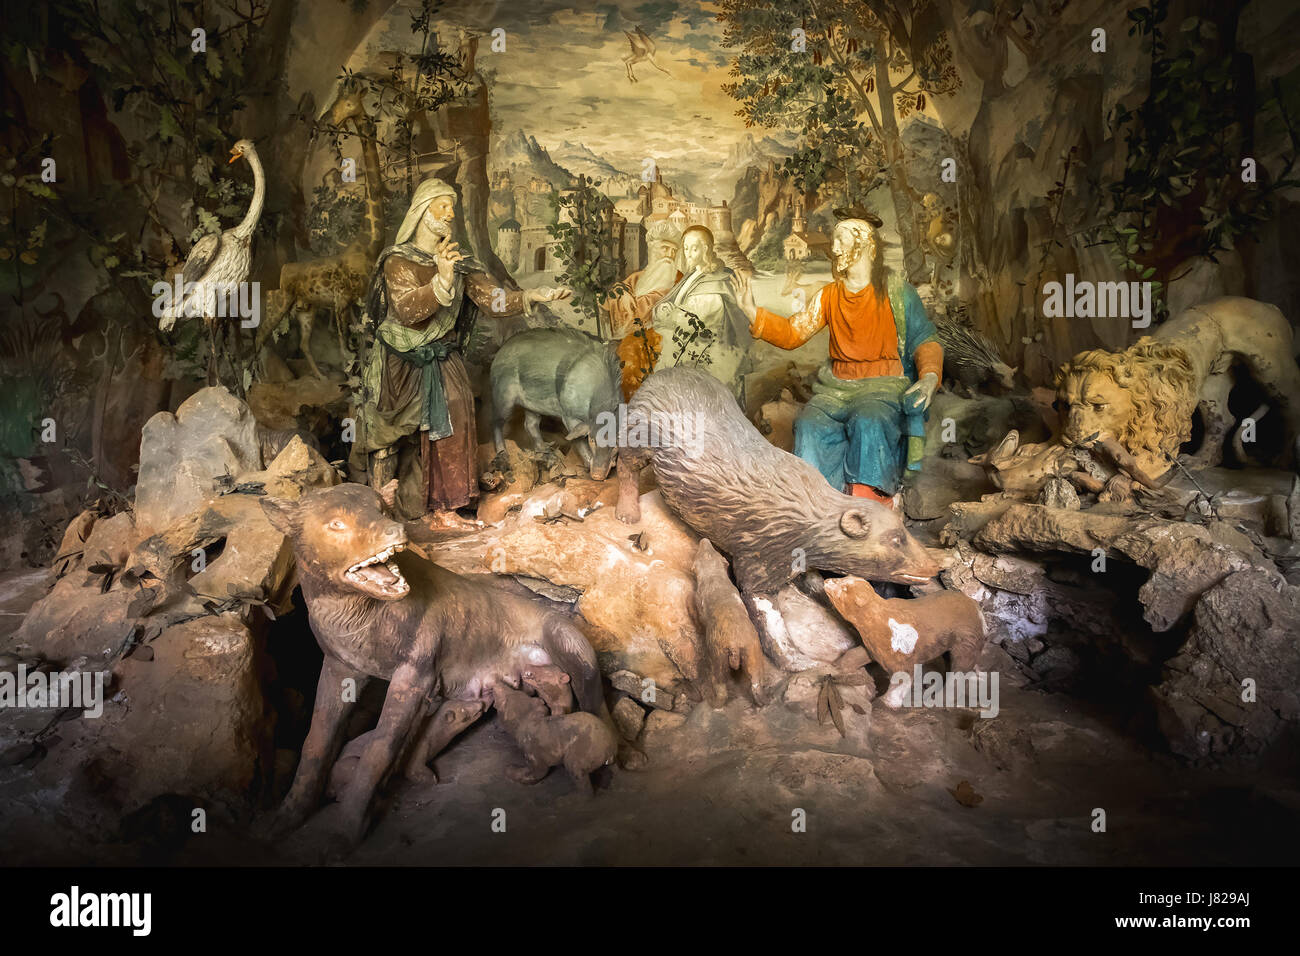 Il Sacro Monte di Varallo, Piemonte, Italia, 23 maggio 2017 - una scena biblica rappresentazione di una terracotta Gesù Cristo circondato da animali feroci Foto Stock